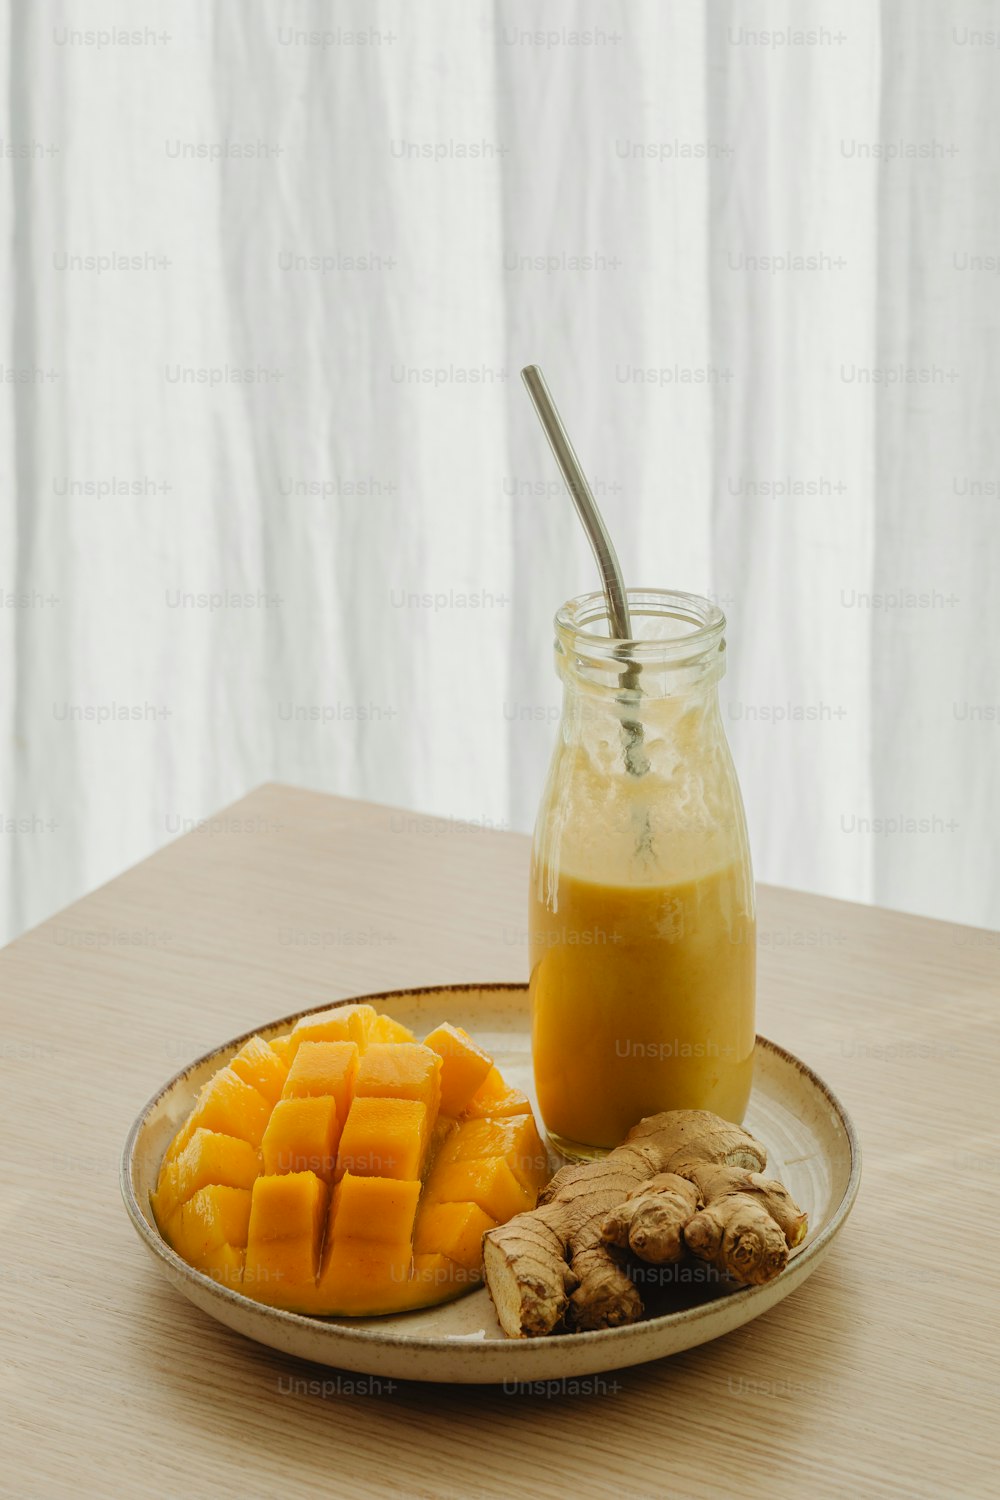 un vaso de jugo de naranja junto a mangos en rodajas y jengibre en un plato